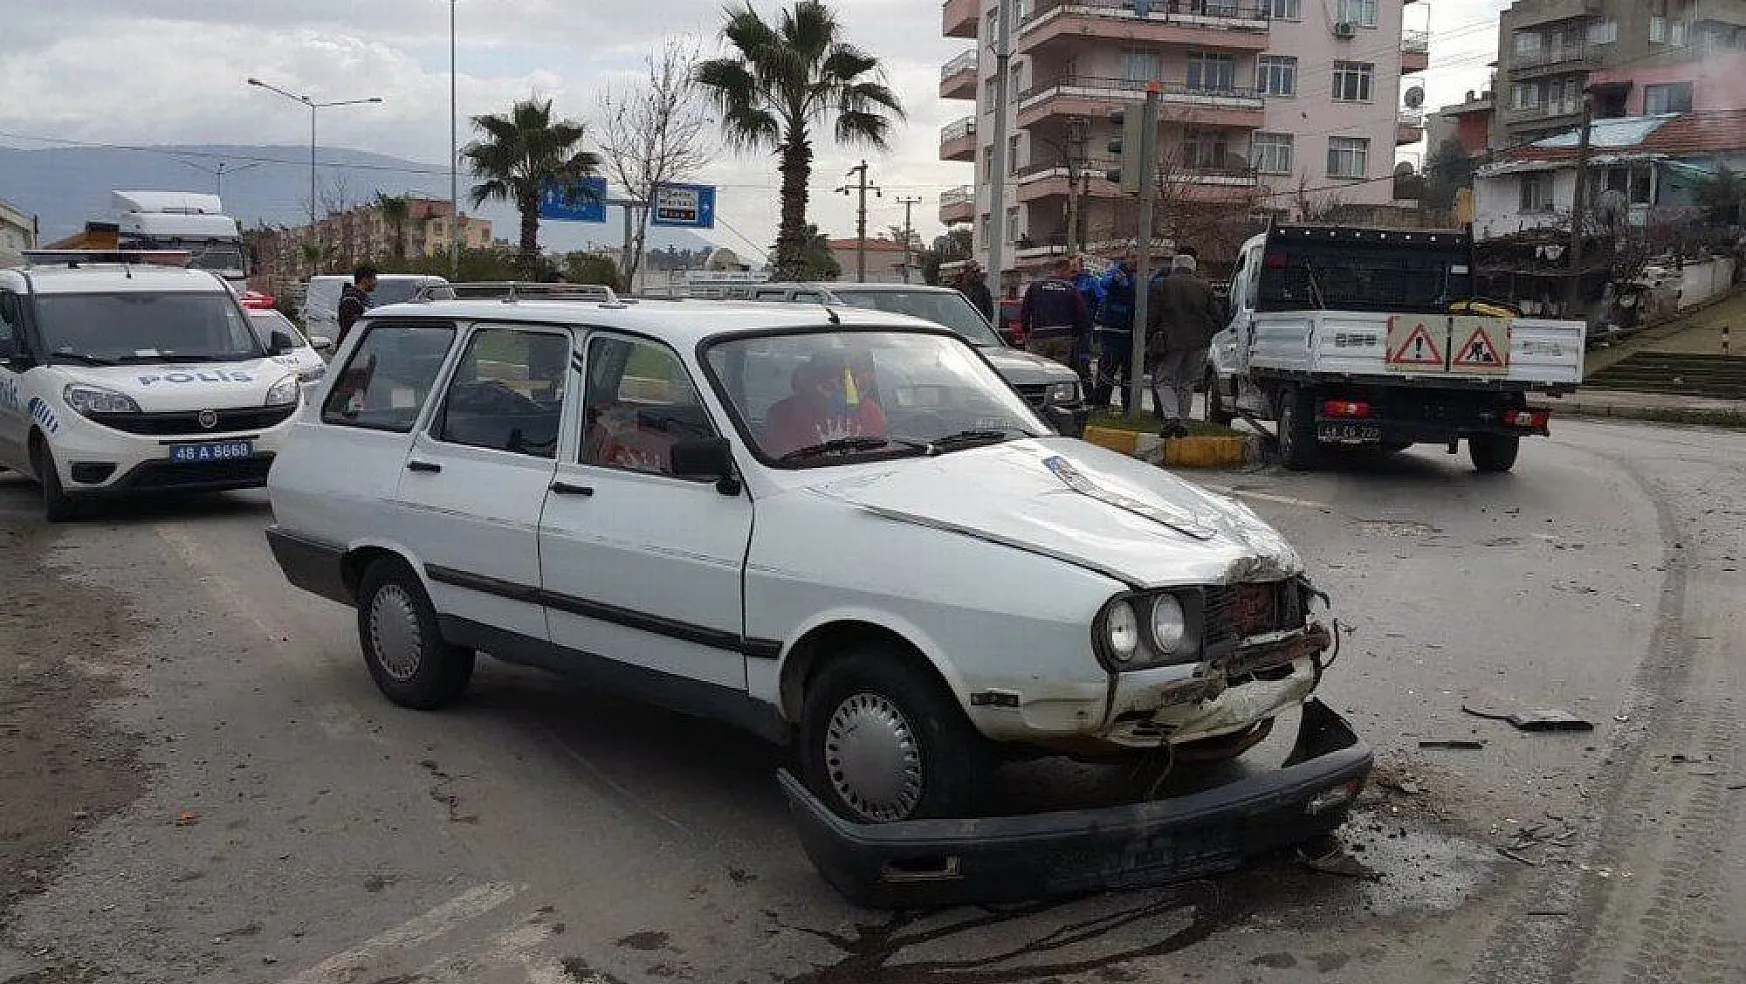 Milas'ta ışık ihlali yapan otomobil kaza yaptı 1 yaralı